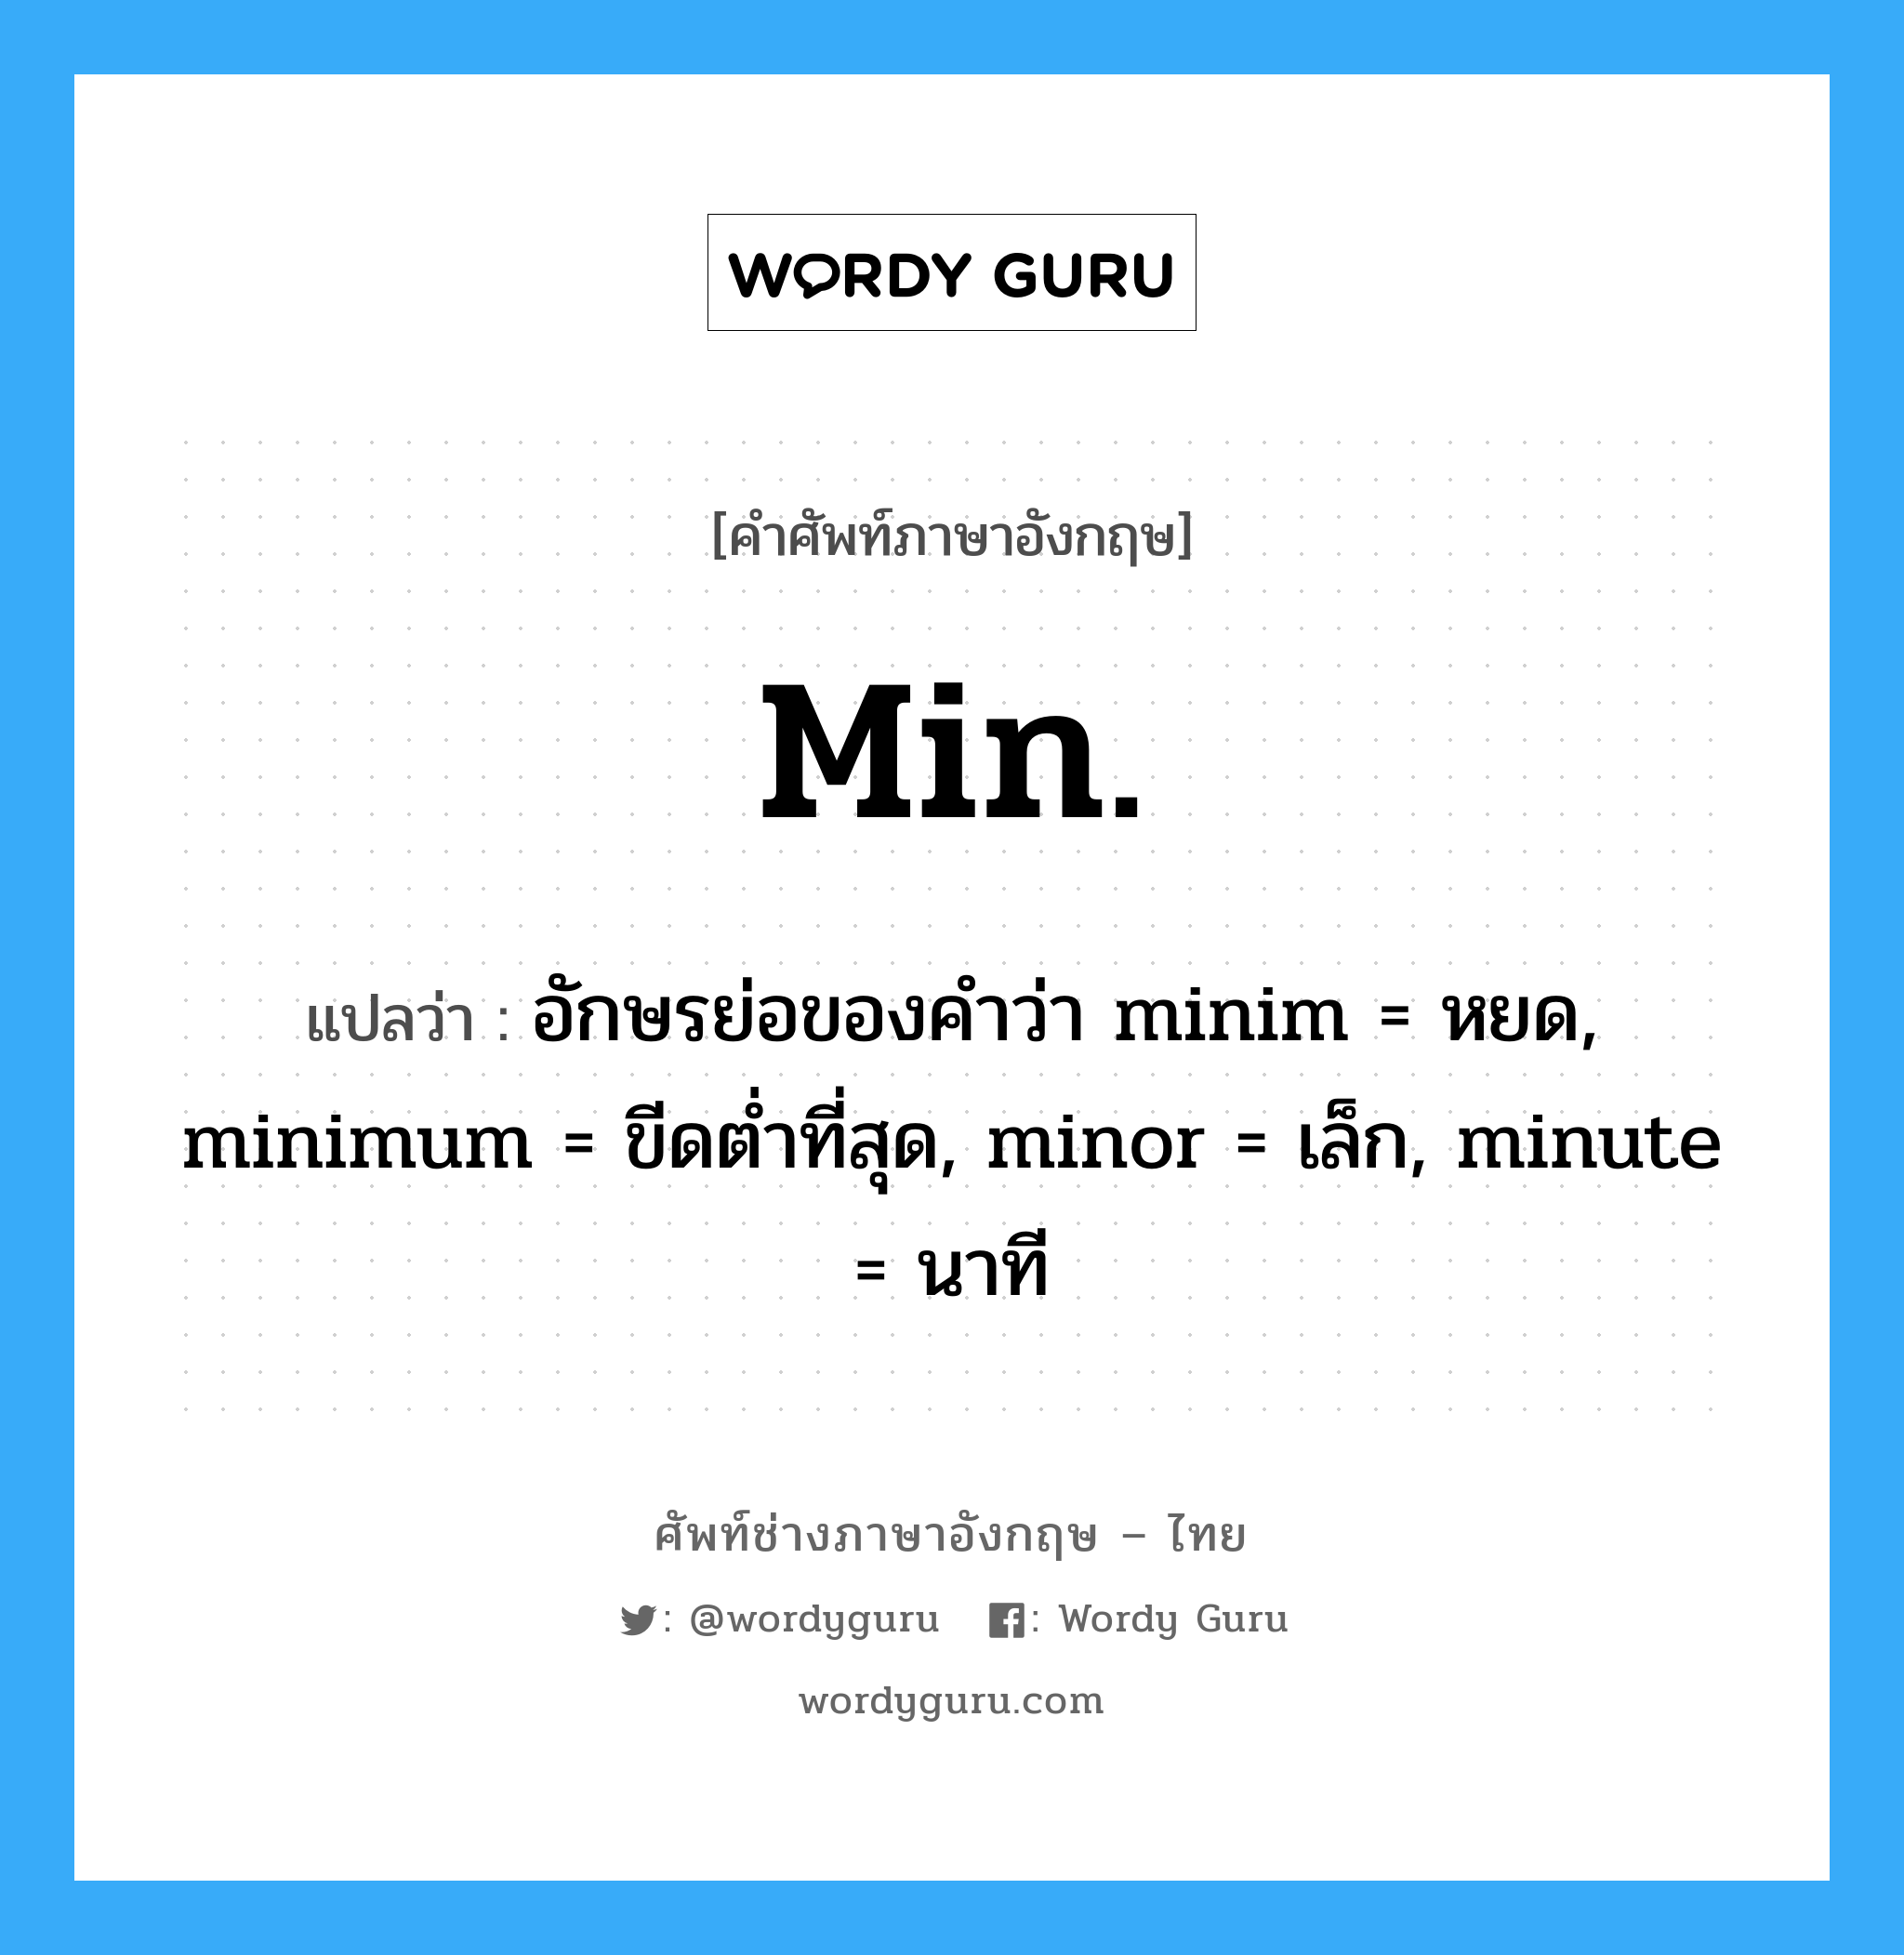 อักษรย่อของคำว่า minim = หยด, minimum = ขีดต่ำที่สุด, minor = เล็ก, minute = นาที ภาษาอังกฤษ?, คำศัพท์ช่างภาษาอังกฤษ - ไทย อักษรย่อของคำว่า minim = หยด, minimum = ขีดต่ำที่สุด, minor = เล็ก, minute = นาที คำศัพท์ภาษาอังกฤษ อักษรย่อของคำว่า minim = หยด, minimum = ขีดต่ำที่สุด, minor = เล็ก, minute = นาที แปลว่า min.